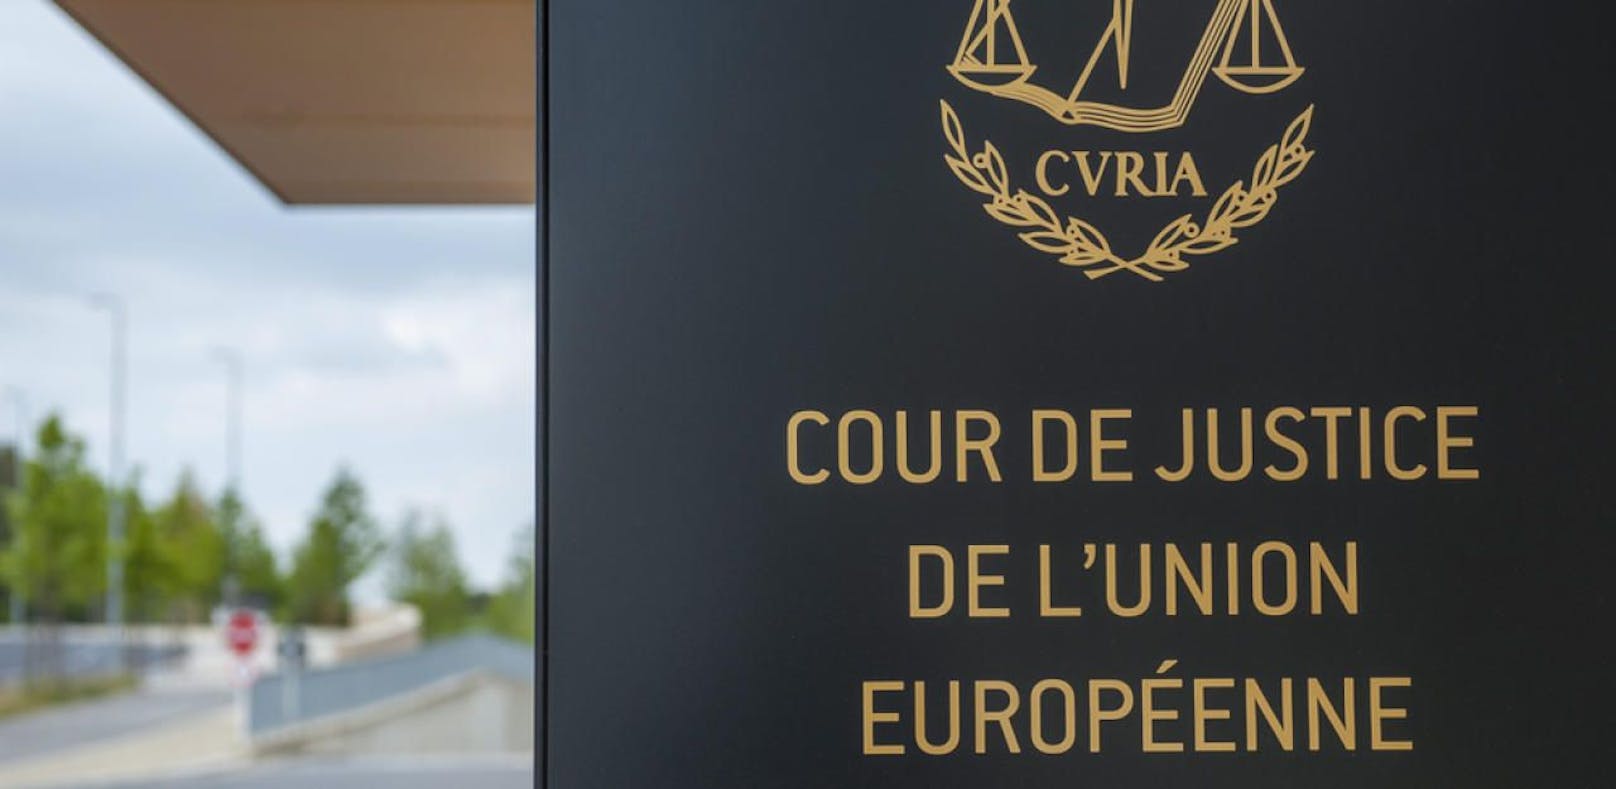 Der Europäische Gerichtshof (EuGH) in Luxemburg